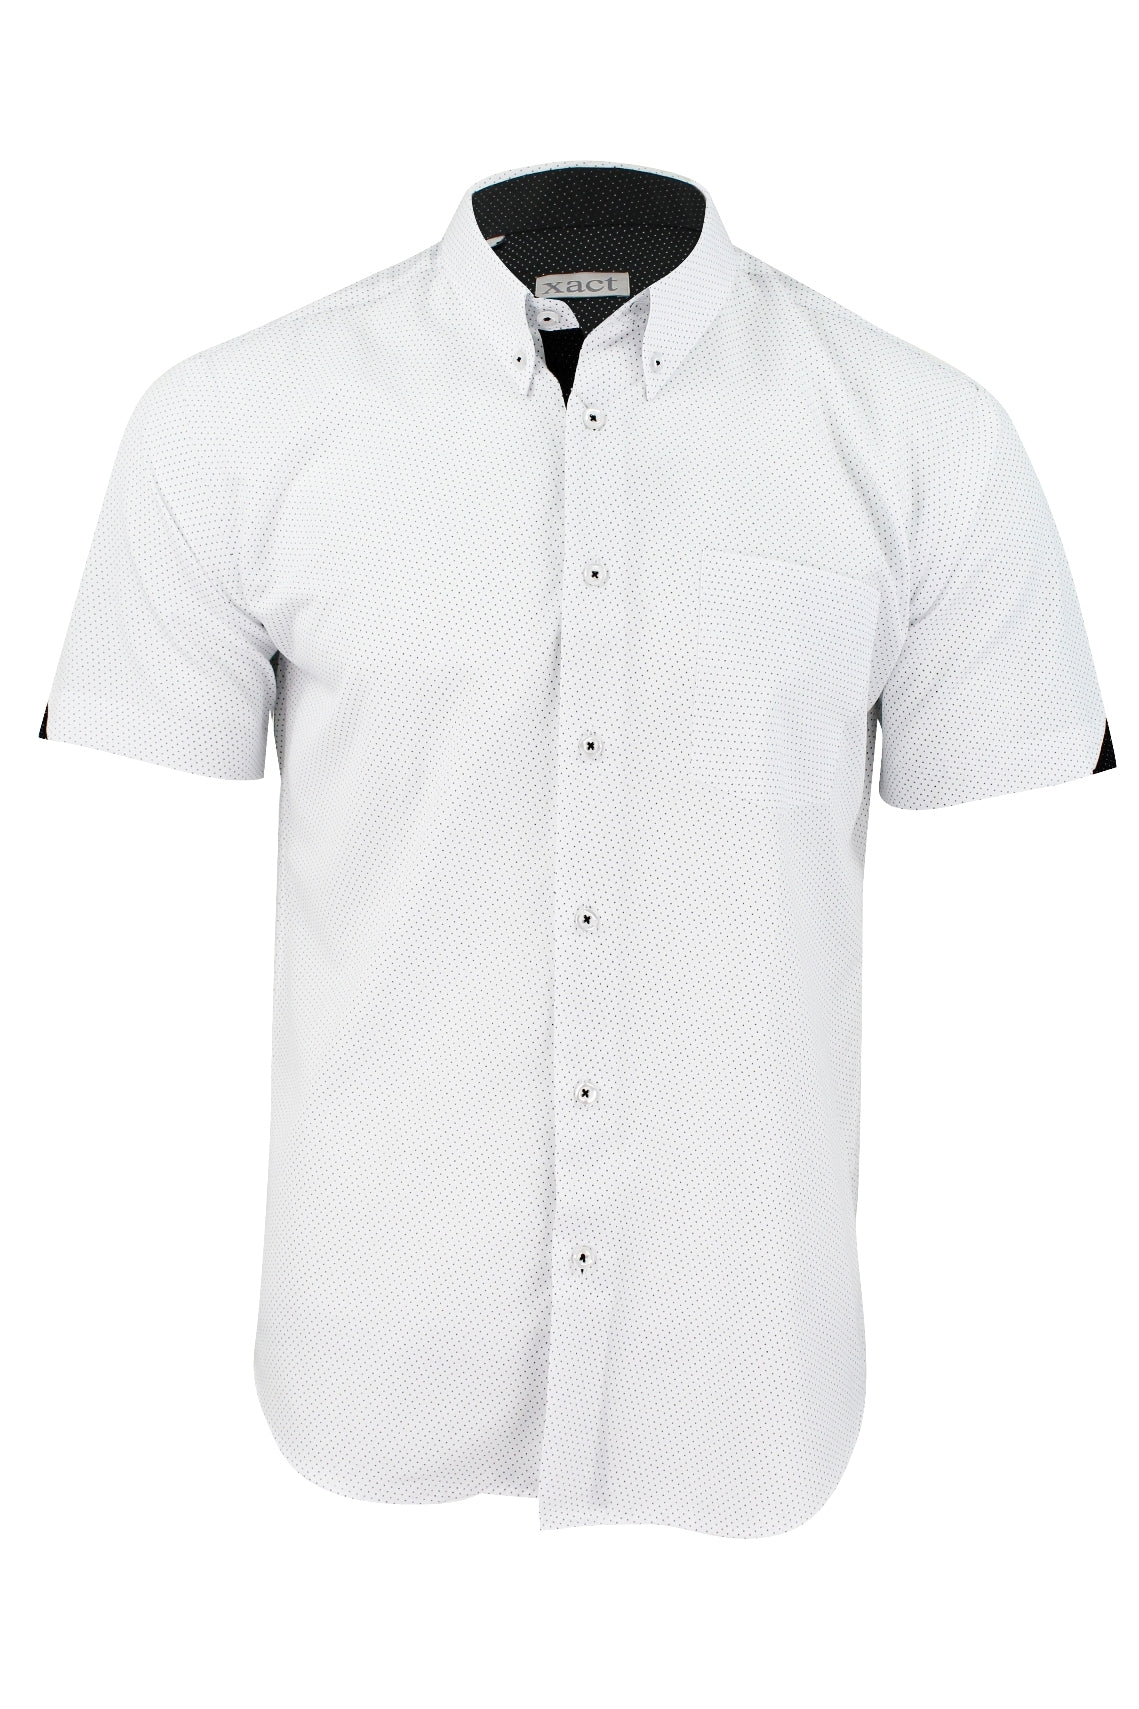 Xact "Mini Polka Dot" Short Sleeved Shirt, 01, K_1510120, White